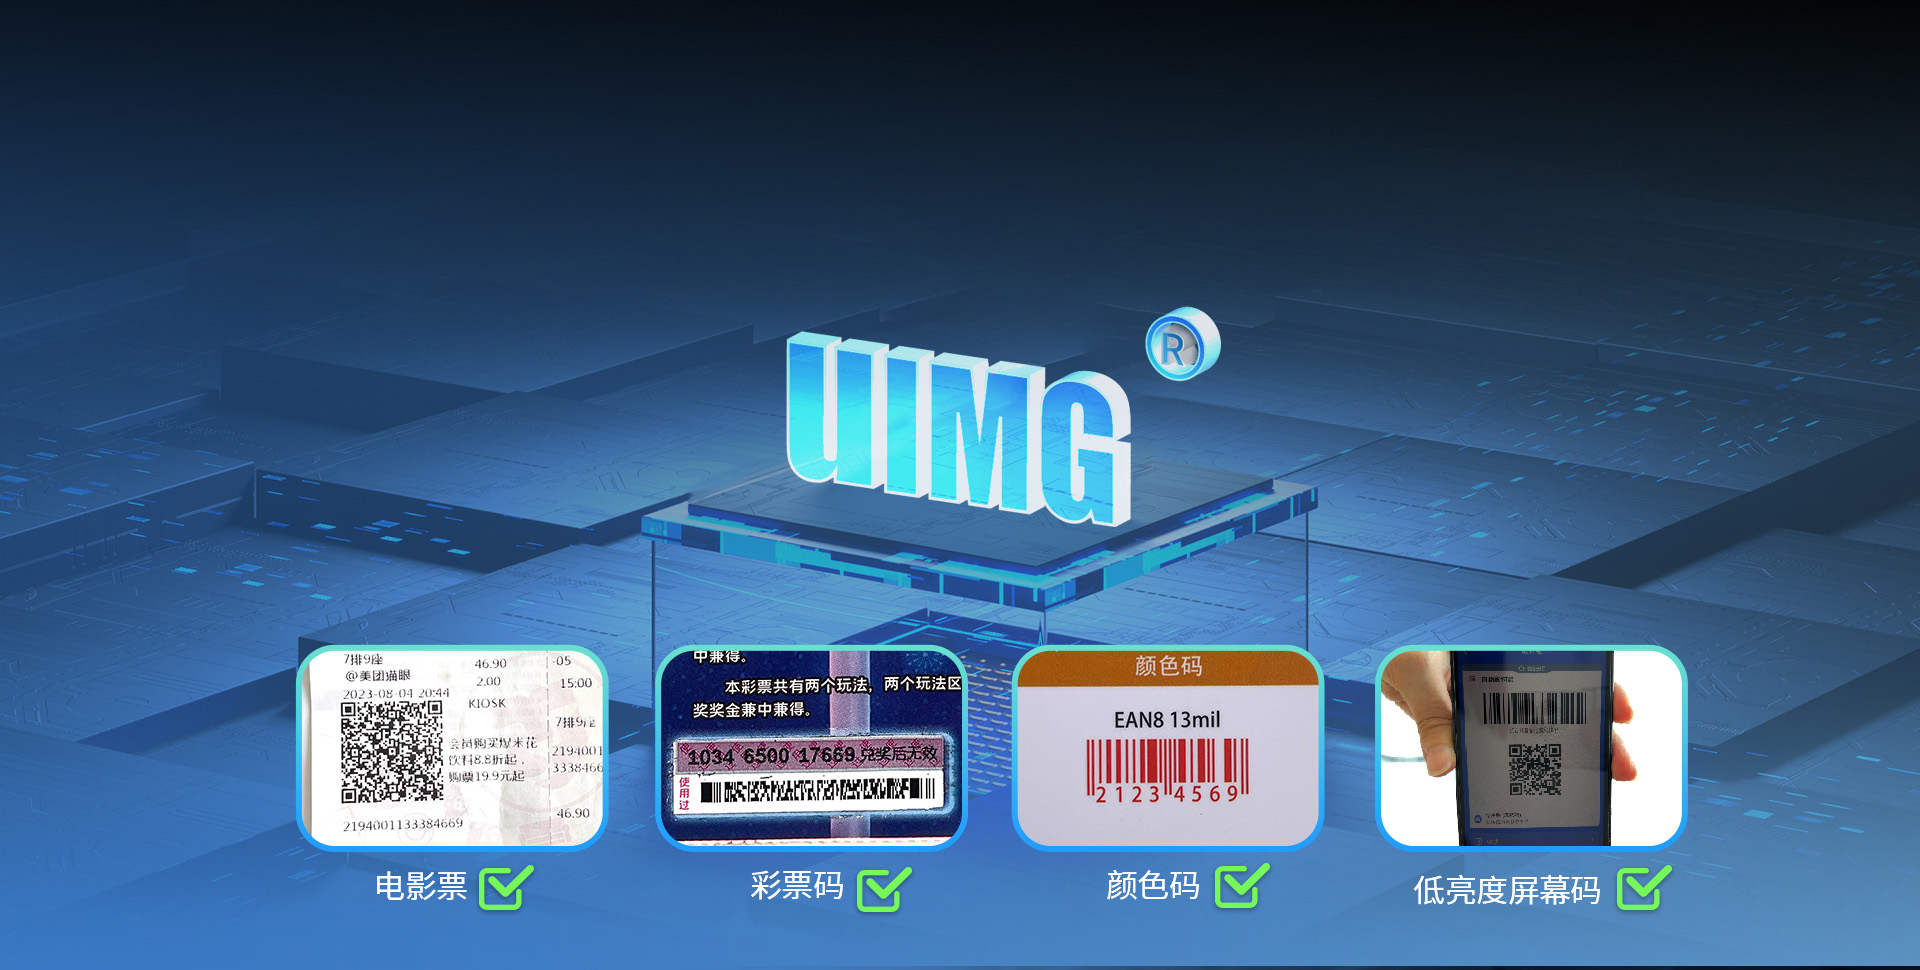 搭载最新一代UIMG解码算法
横扫各类纸质条码与屏幕码